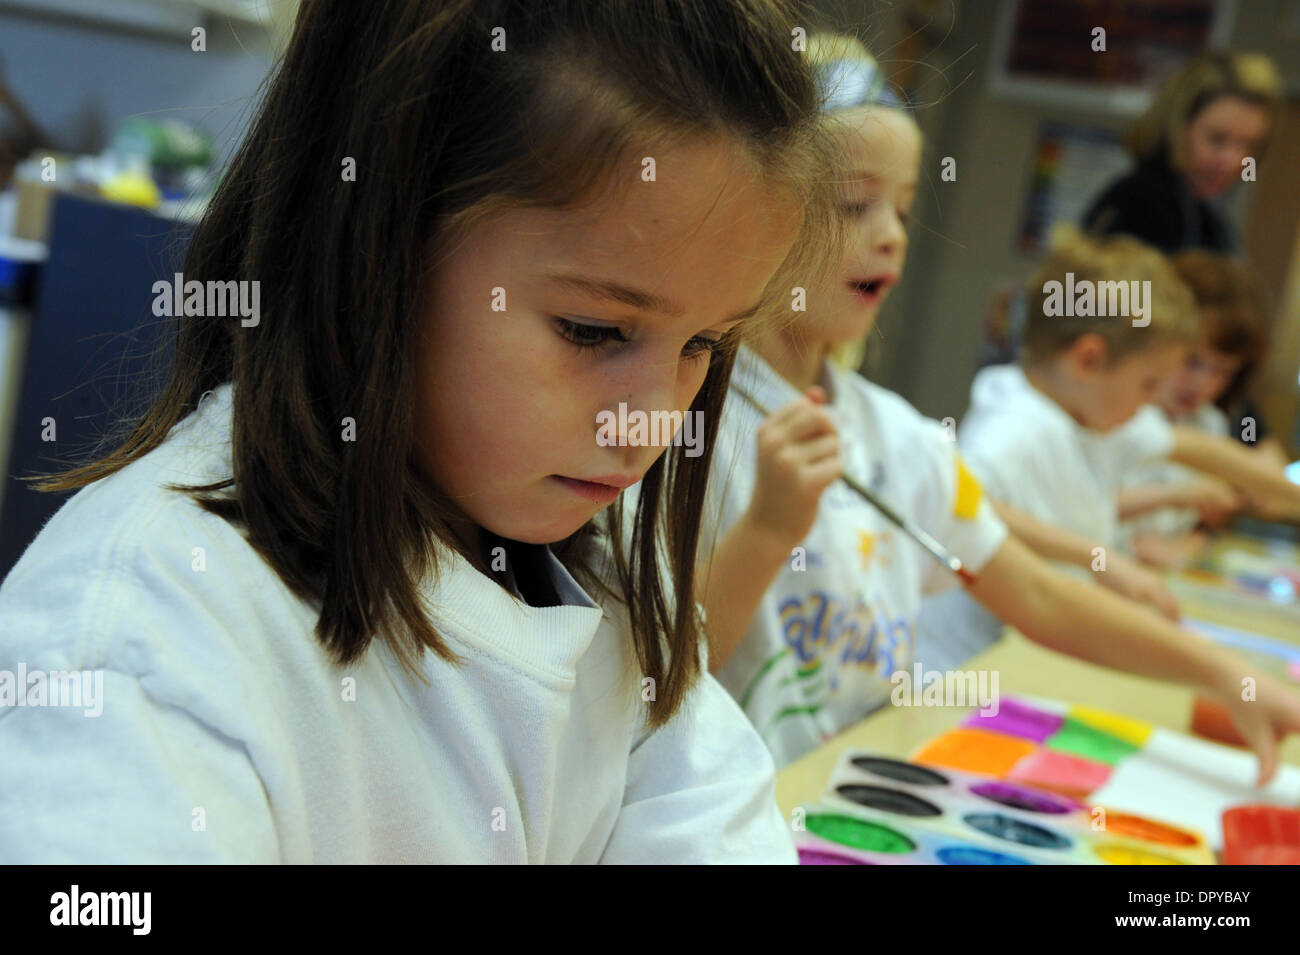 27 févr. 2009 - Marietta, Georgia, USA - la classe d'art dans une école chrétienne privée dans la région de Marietta, Géorgie. (Crédit Image : © Robin Nelson/ZUMA Press) Banque D'Images